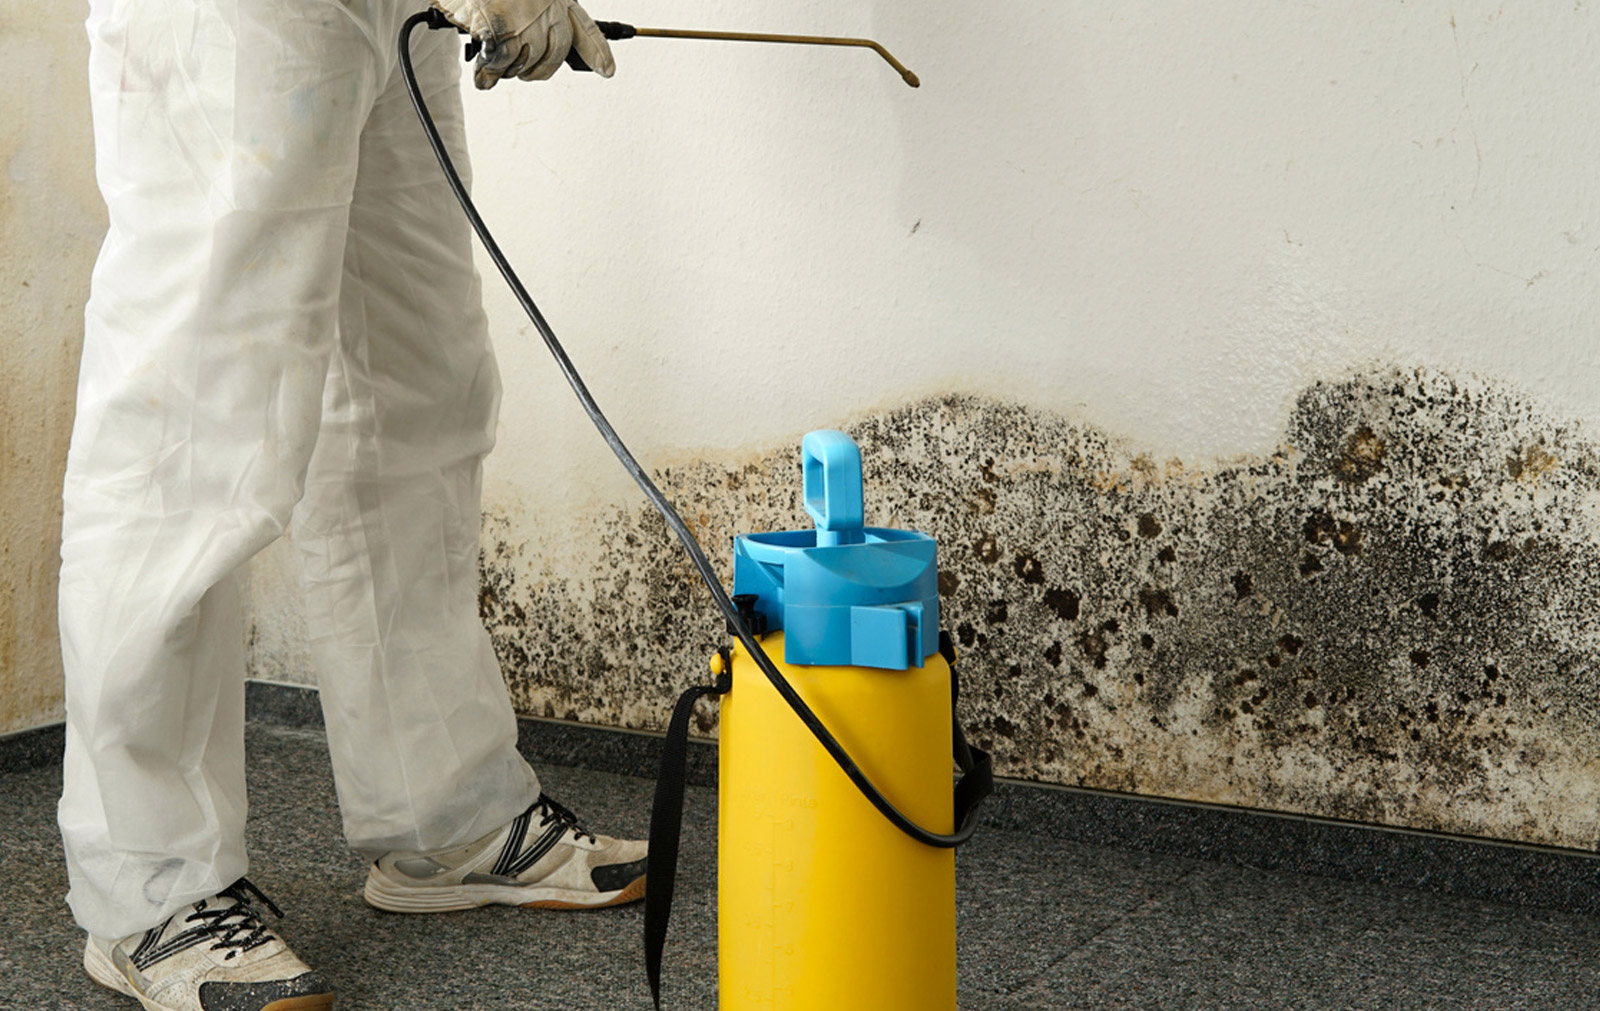 Les risques sanitaires sont réels dans le cas d'habitation Diogène, il est donc indispensable de faire appel à des professionnels pour débarrasser et nettoyer la maison.